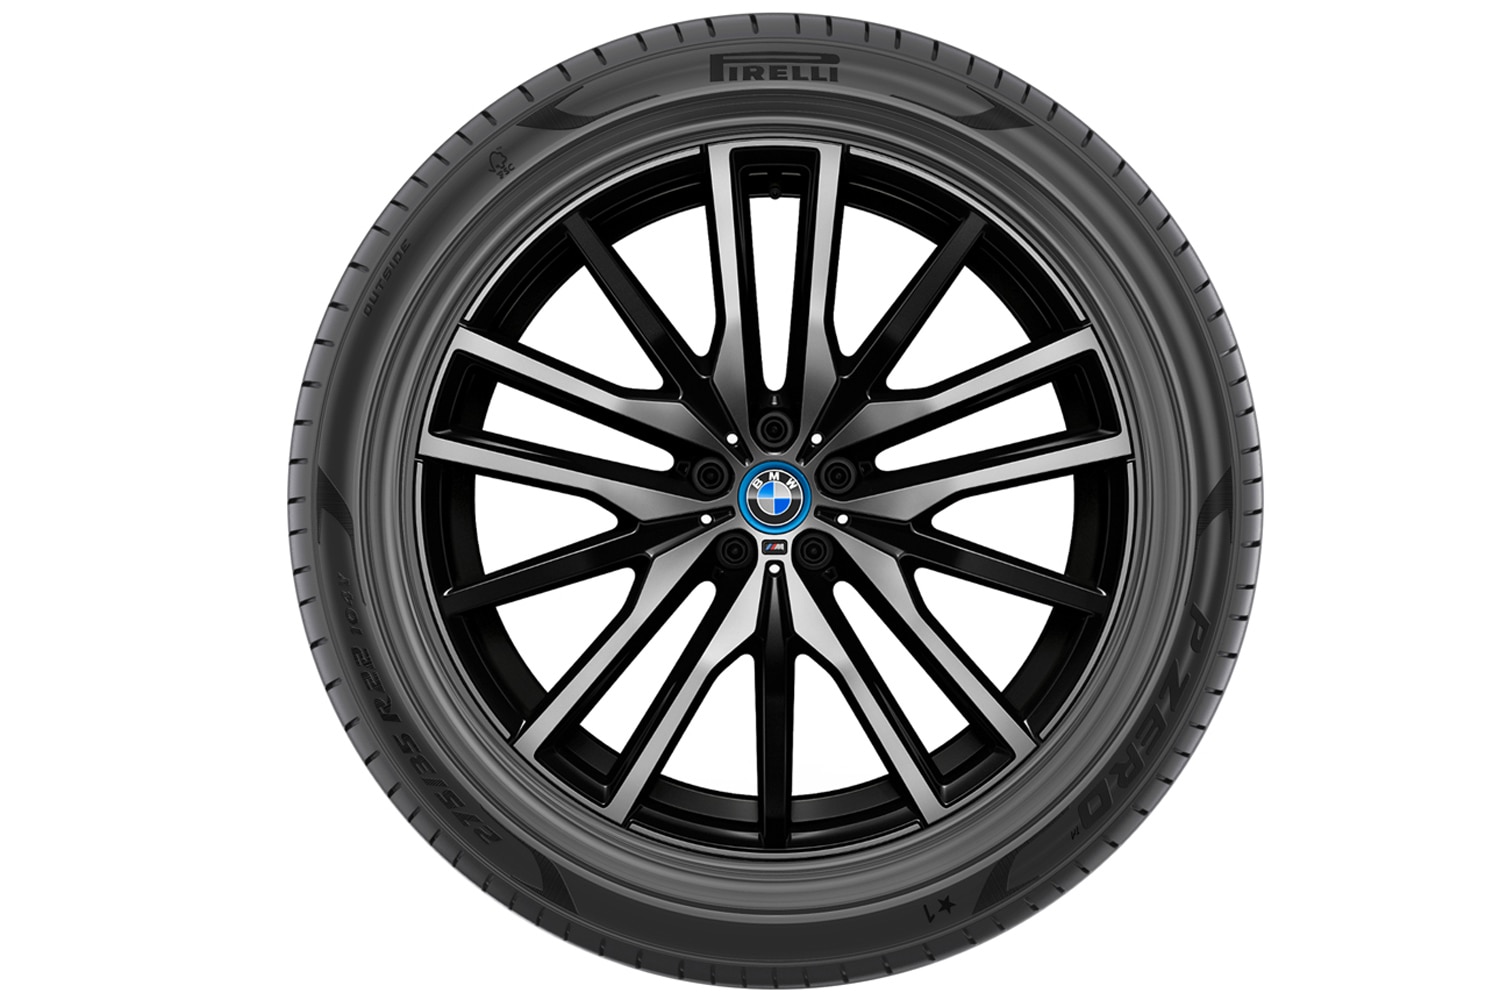 Pirelli tire on a BMW X5 wheel